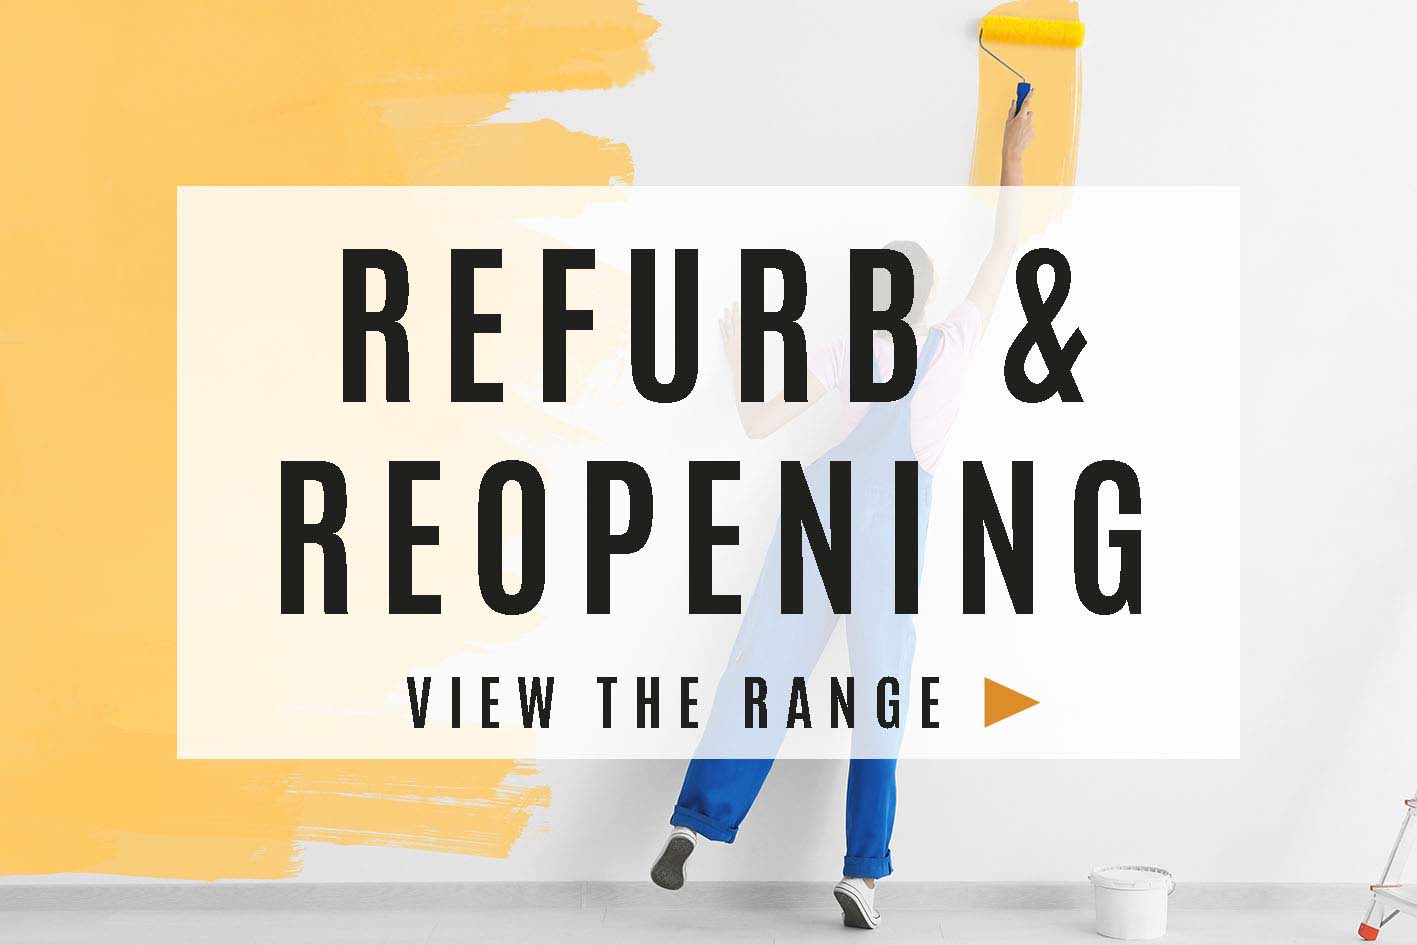 Refurb & Reopening